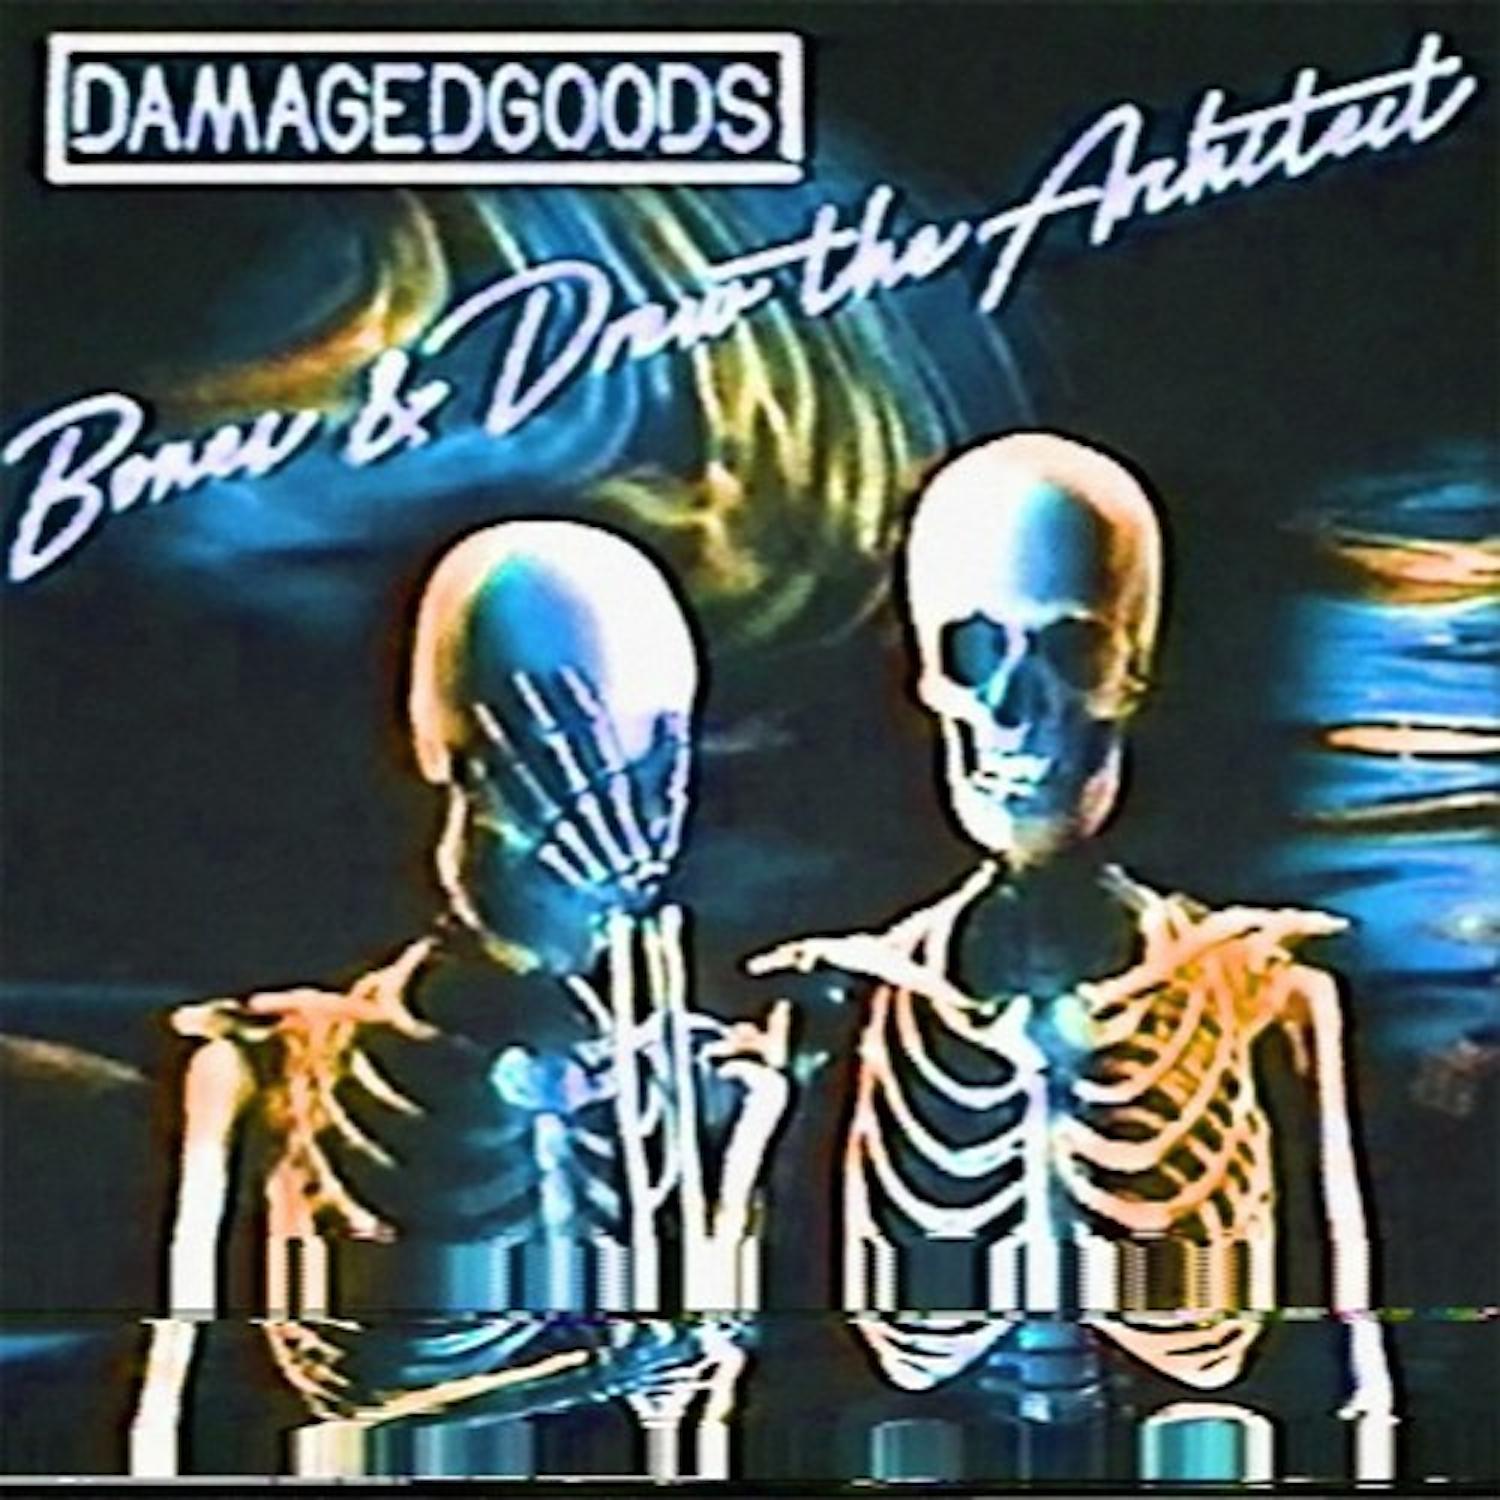 Bones (рэпер). Damaged goods Bones. Bones обложки альбомов. Bones Drew the Architect Damaged goods.